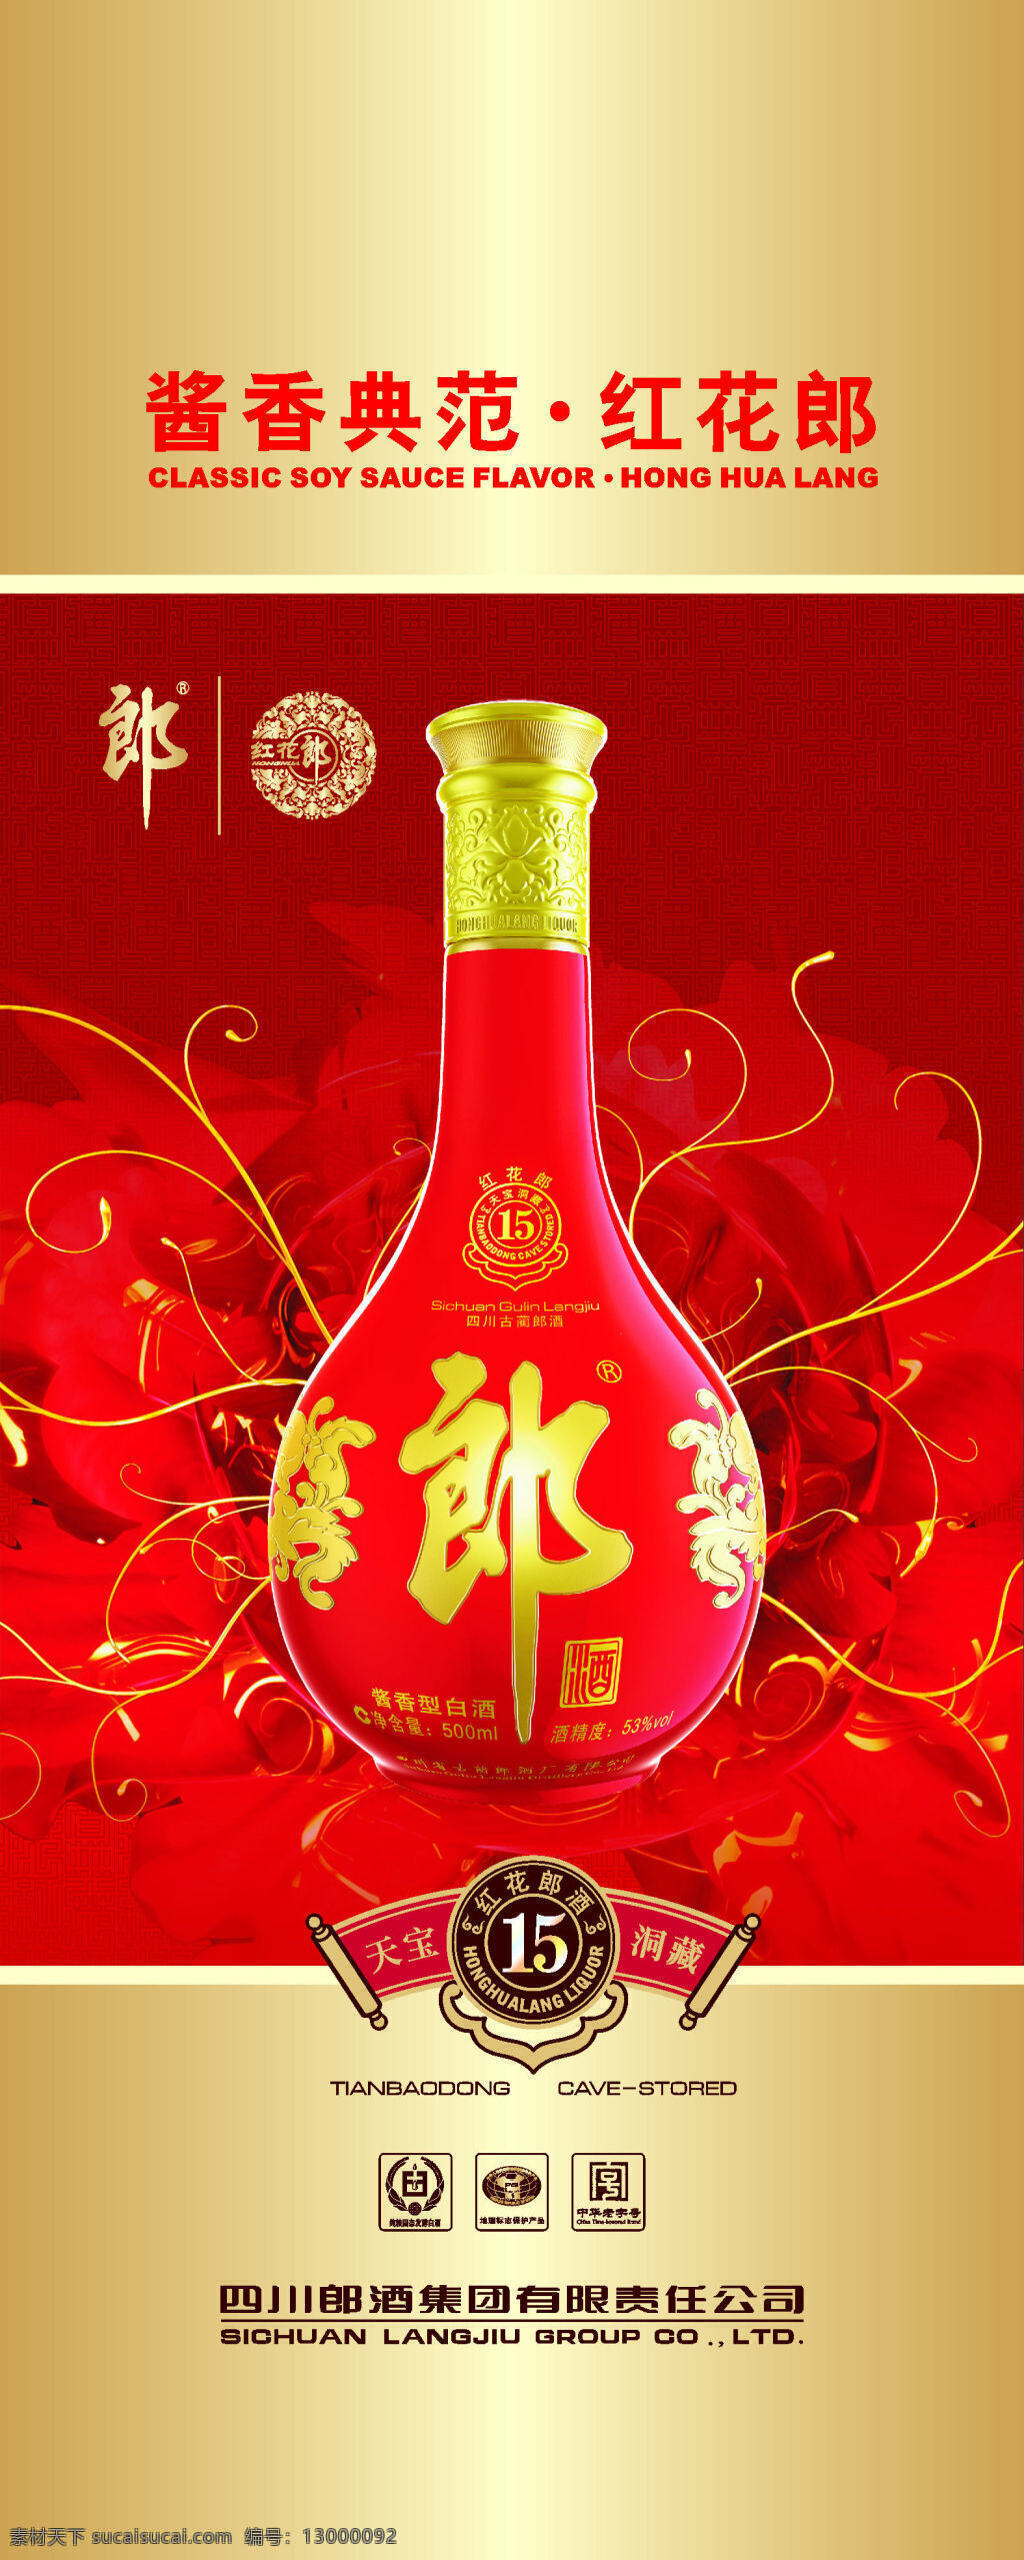 2016 红花 郎 形象 建设 氛围 营造 易拉宝 酱香 典范 郎酒集团 年 醇 红色